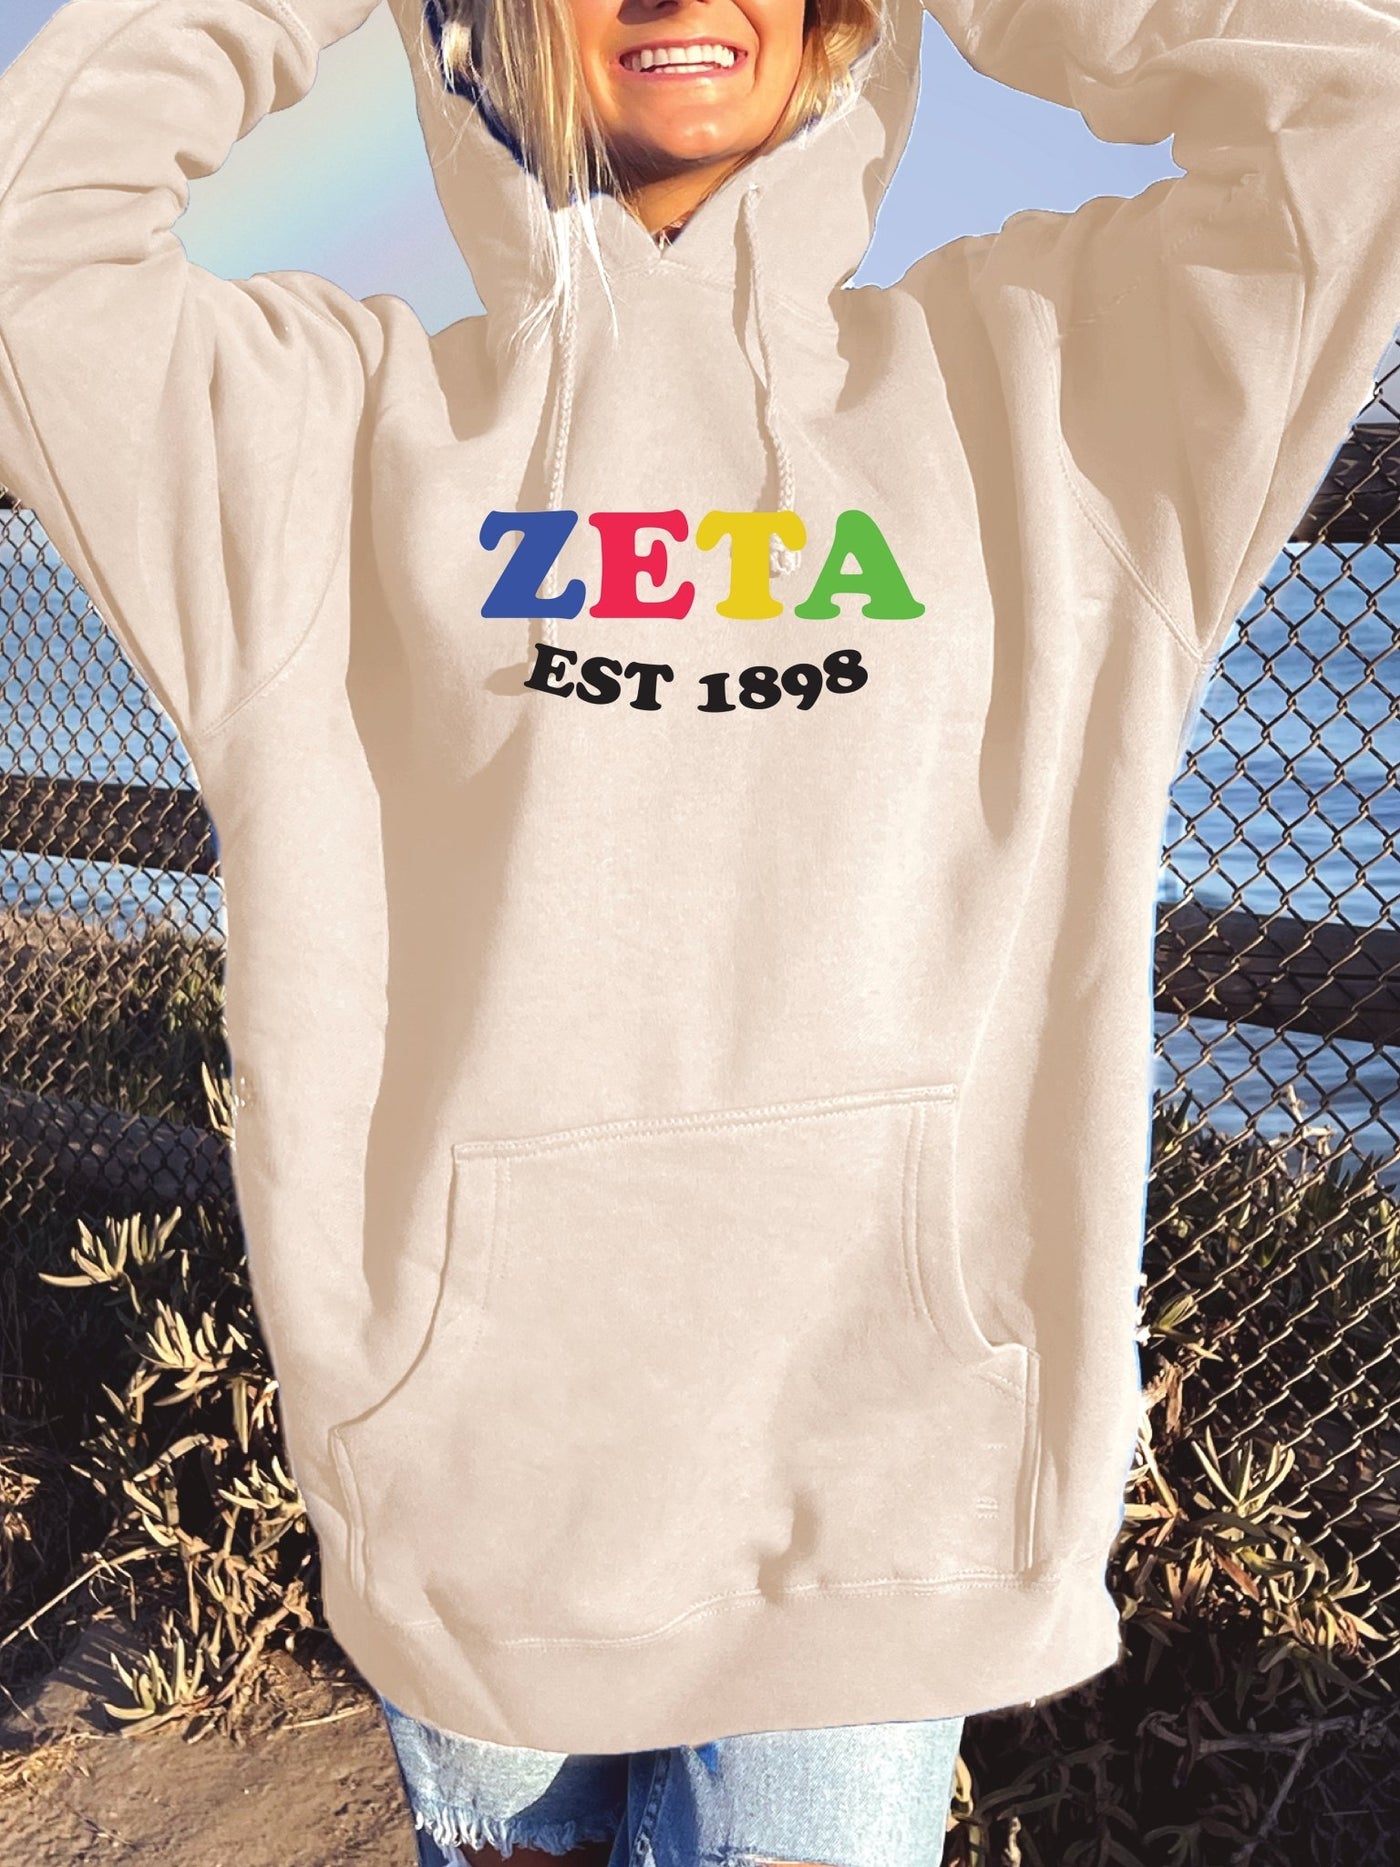 Zeta Tau Alpha Colorful Sorority Sweatshirt Zeta Hoodie